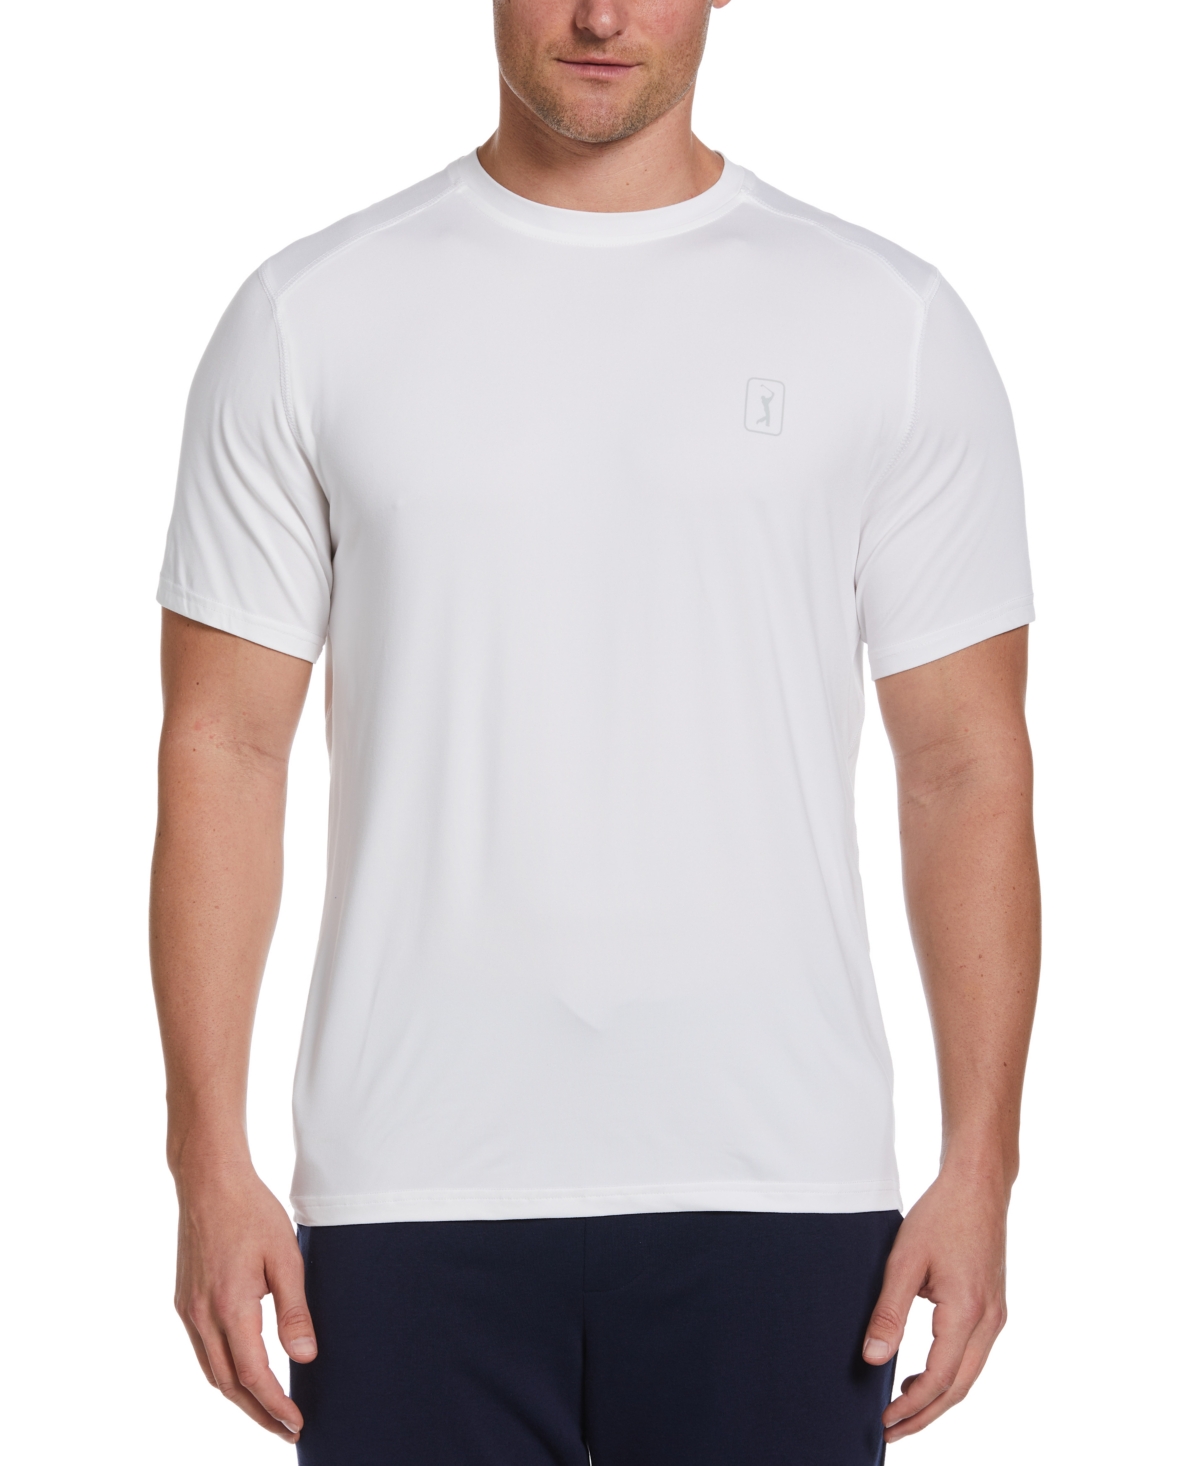 Men's Heathered T-Shirt - Bright White